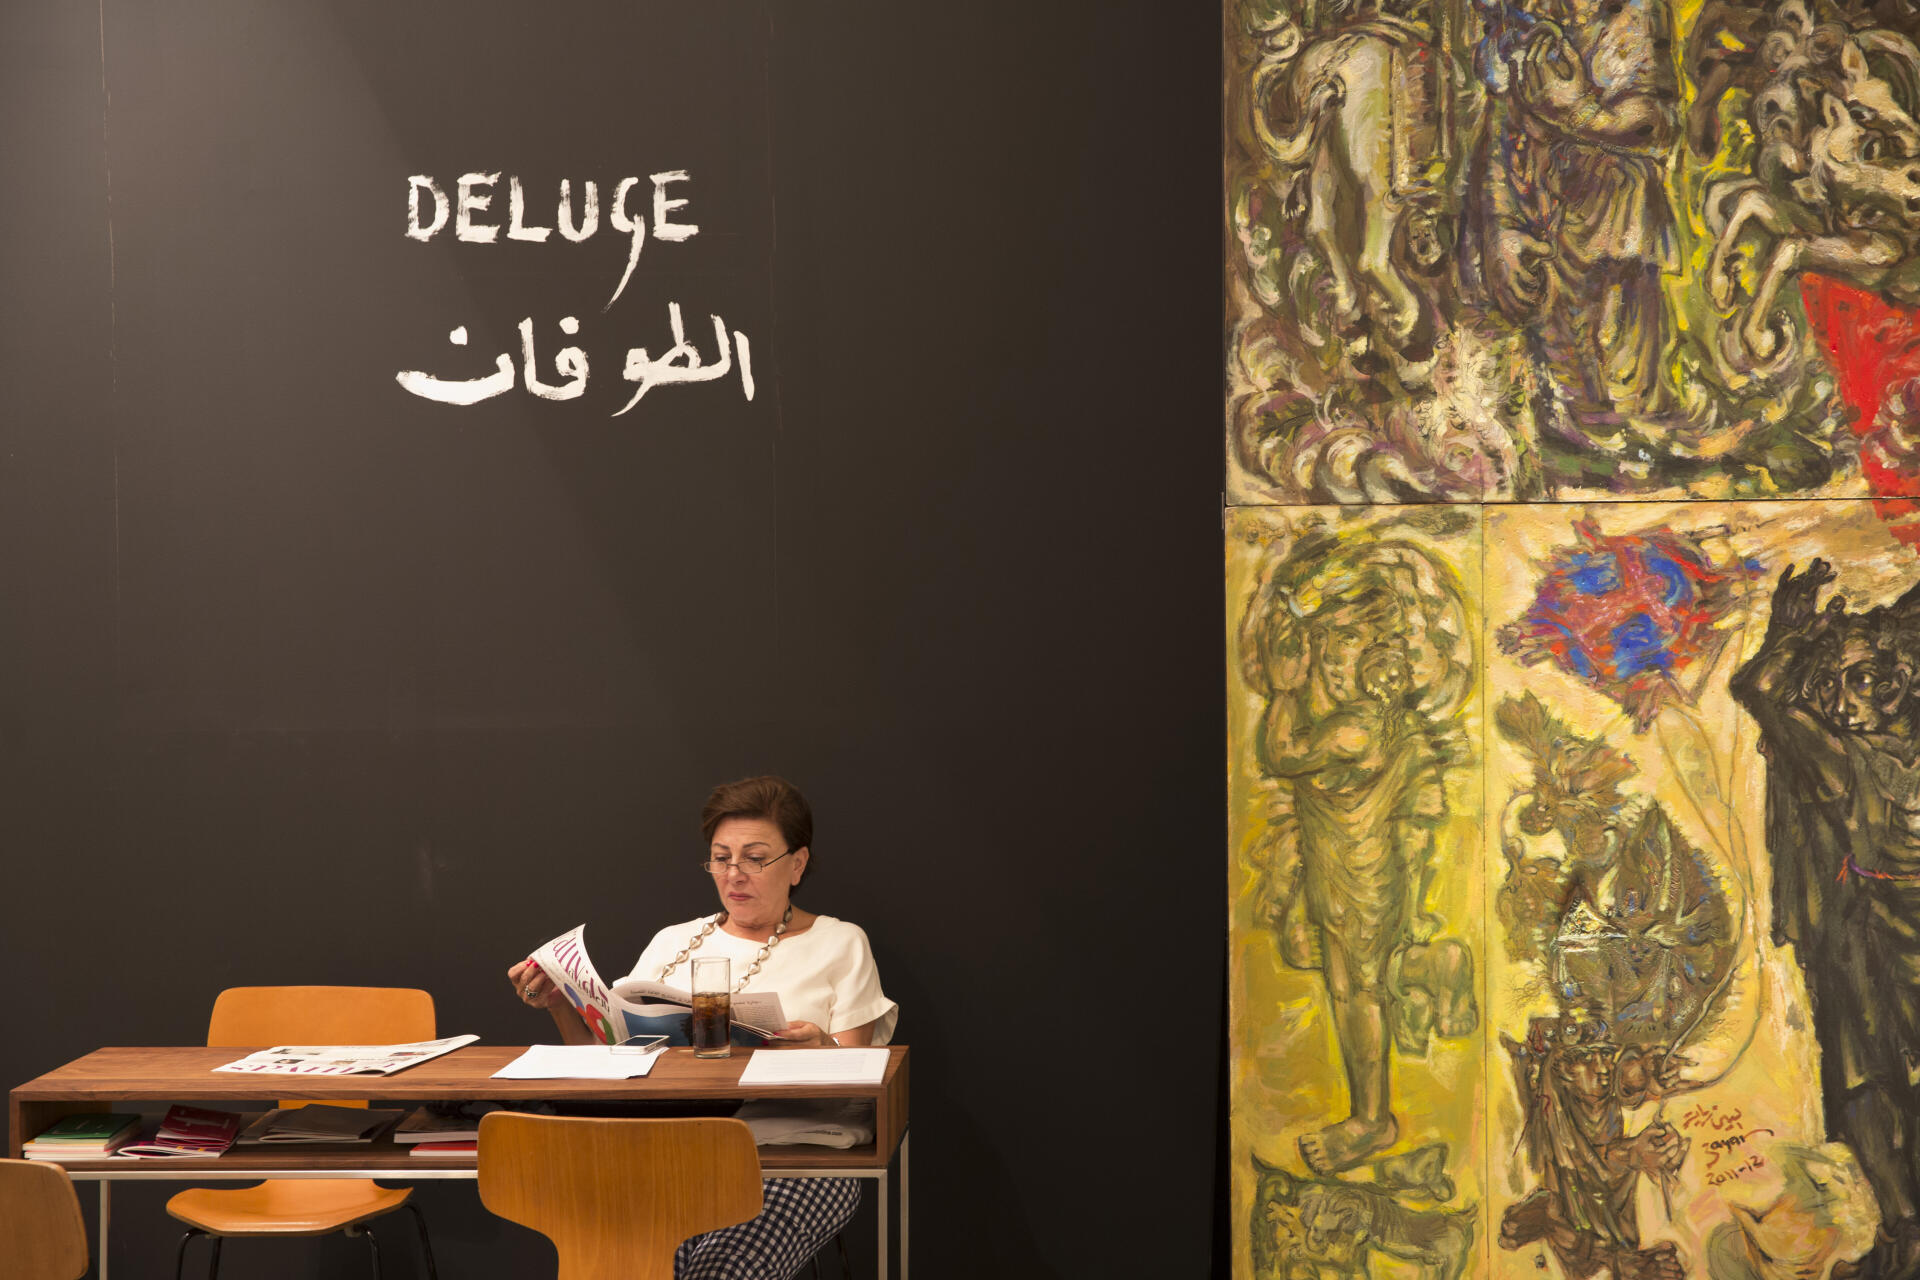 Le 20 mars 2015, durant la foire d'art contemporain Art Dubaï, Mouna Atassi, fondatrice de la galerie dubaïote Atassi Gallery, est assise à côté de “Déluge”, une œuvre d'Elias Zayyat.